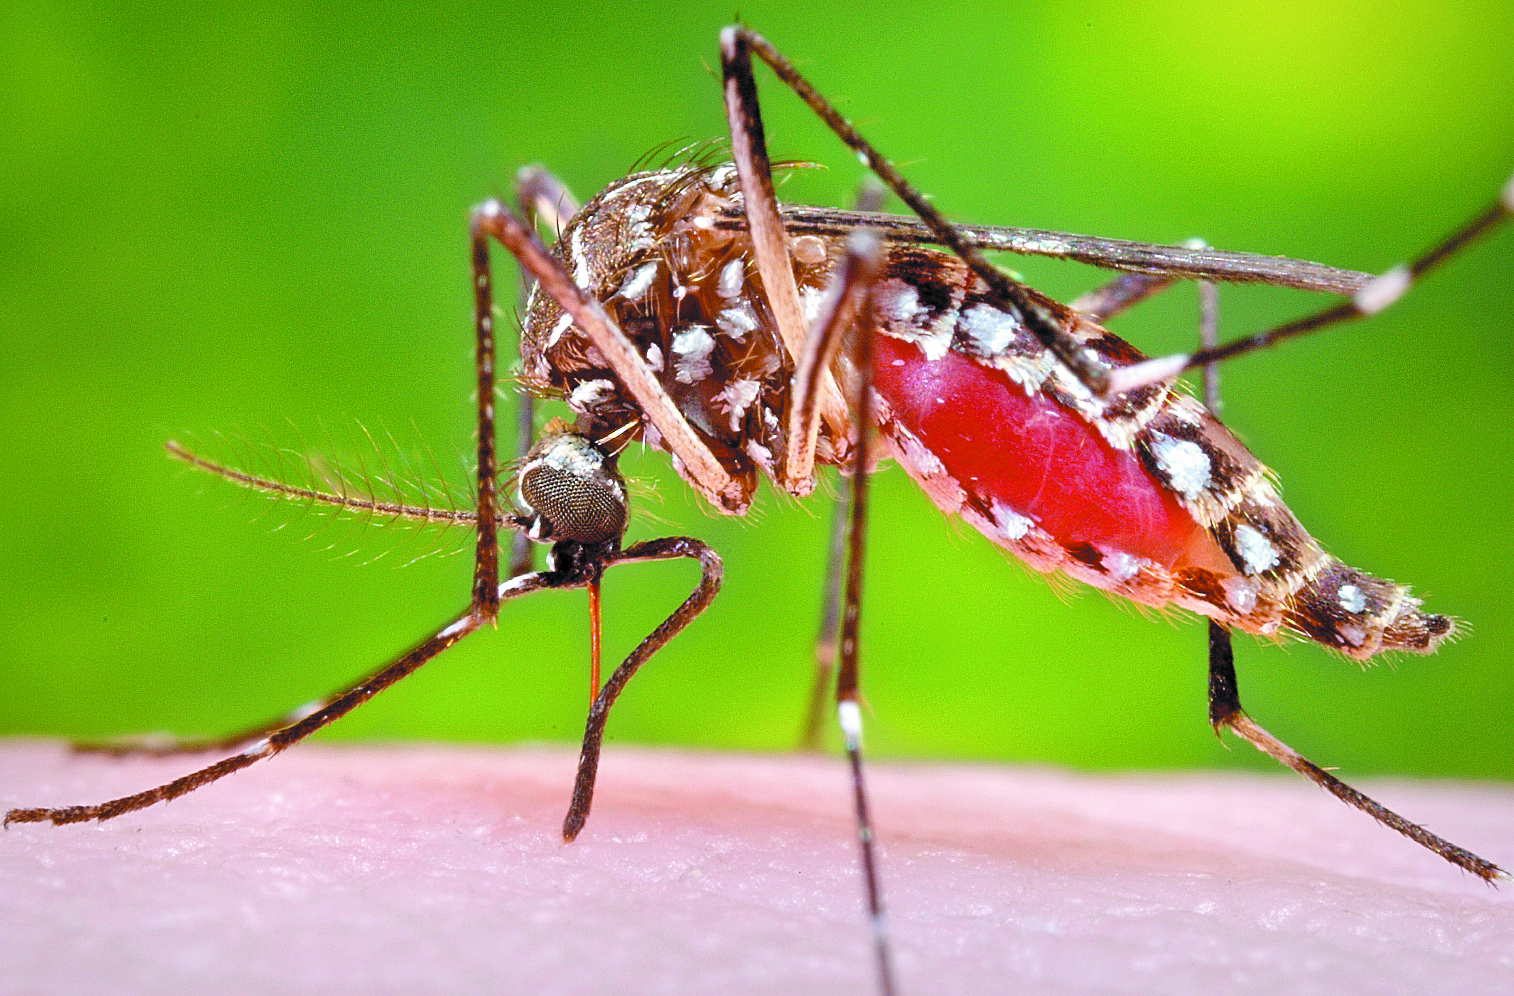 El mosquito Aedes aegypti se ha propagado en el país. Este es el transmisor del dengue. (Foto Prensa Libre: Hemeroteca PL)